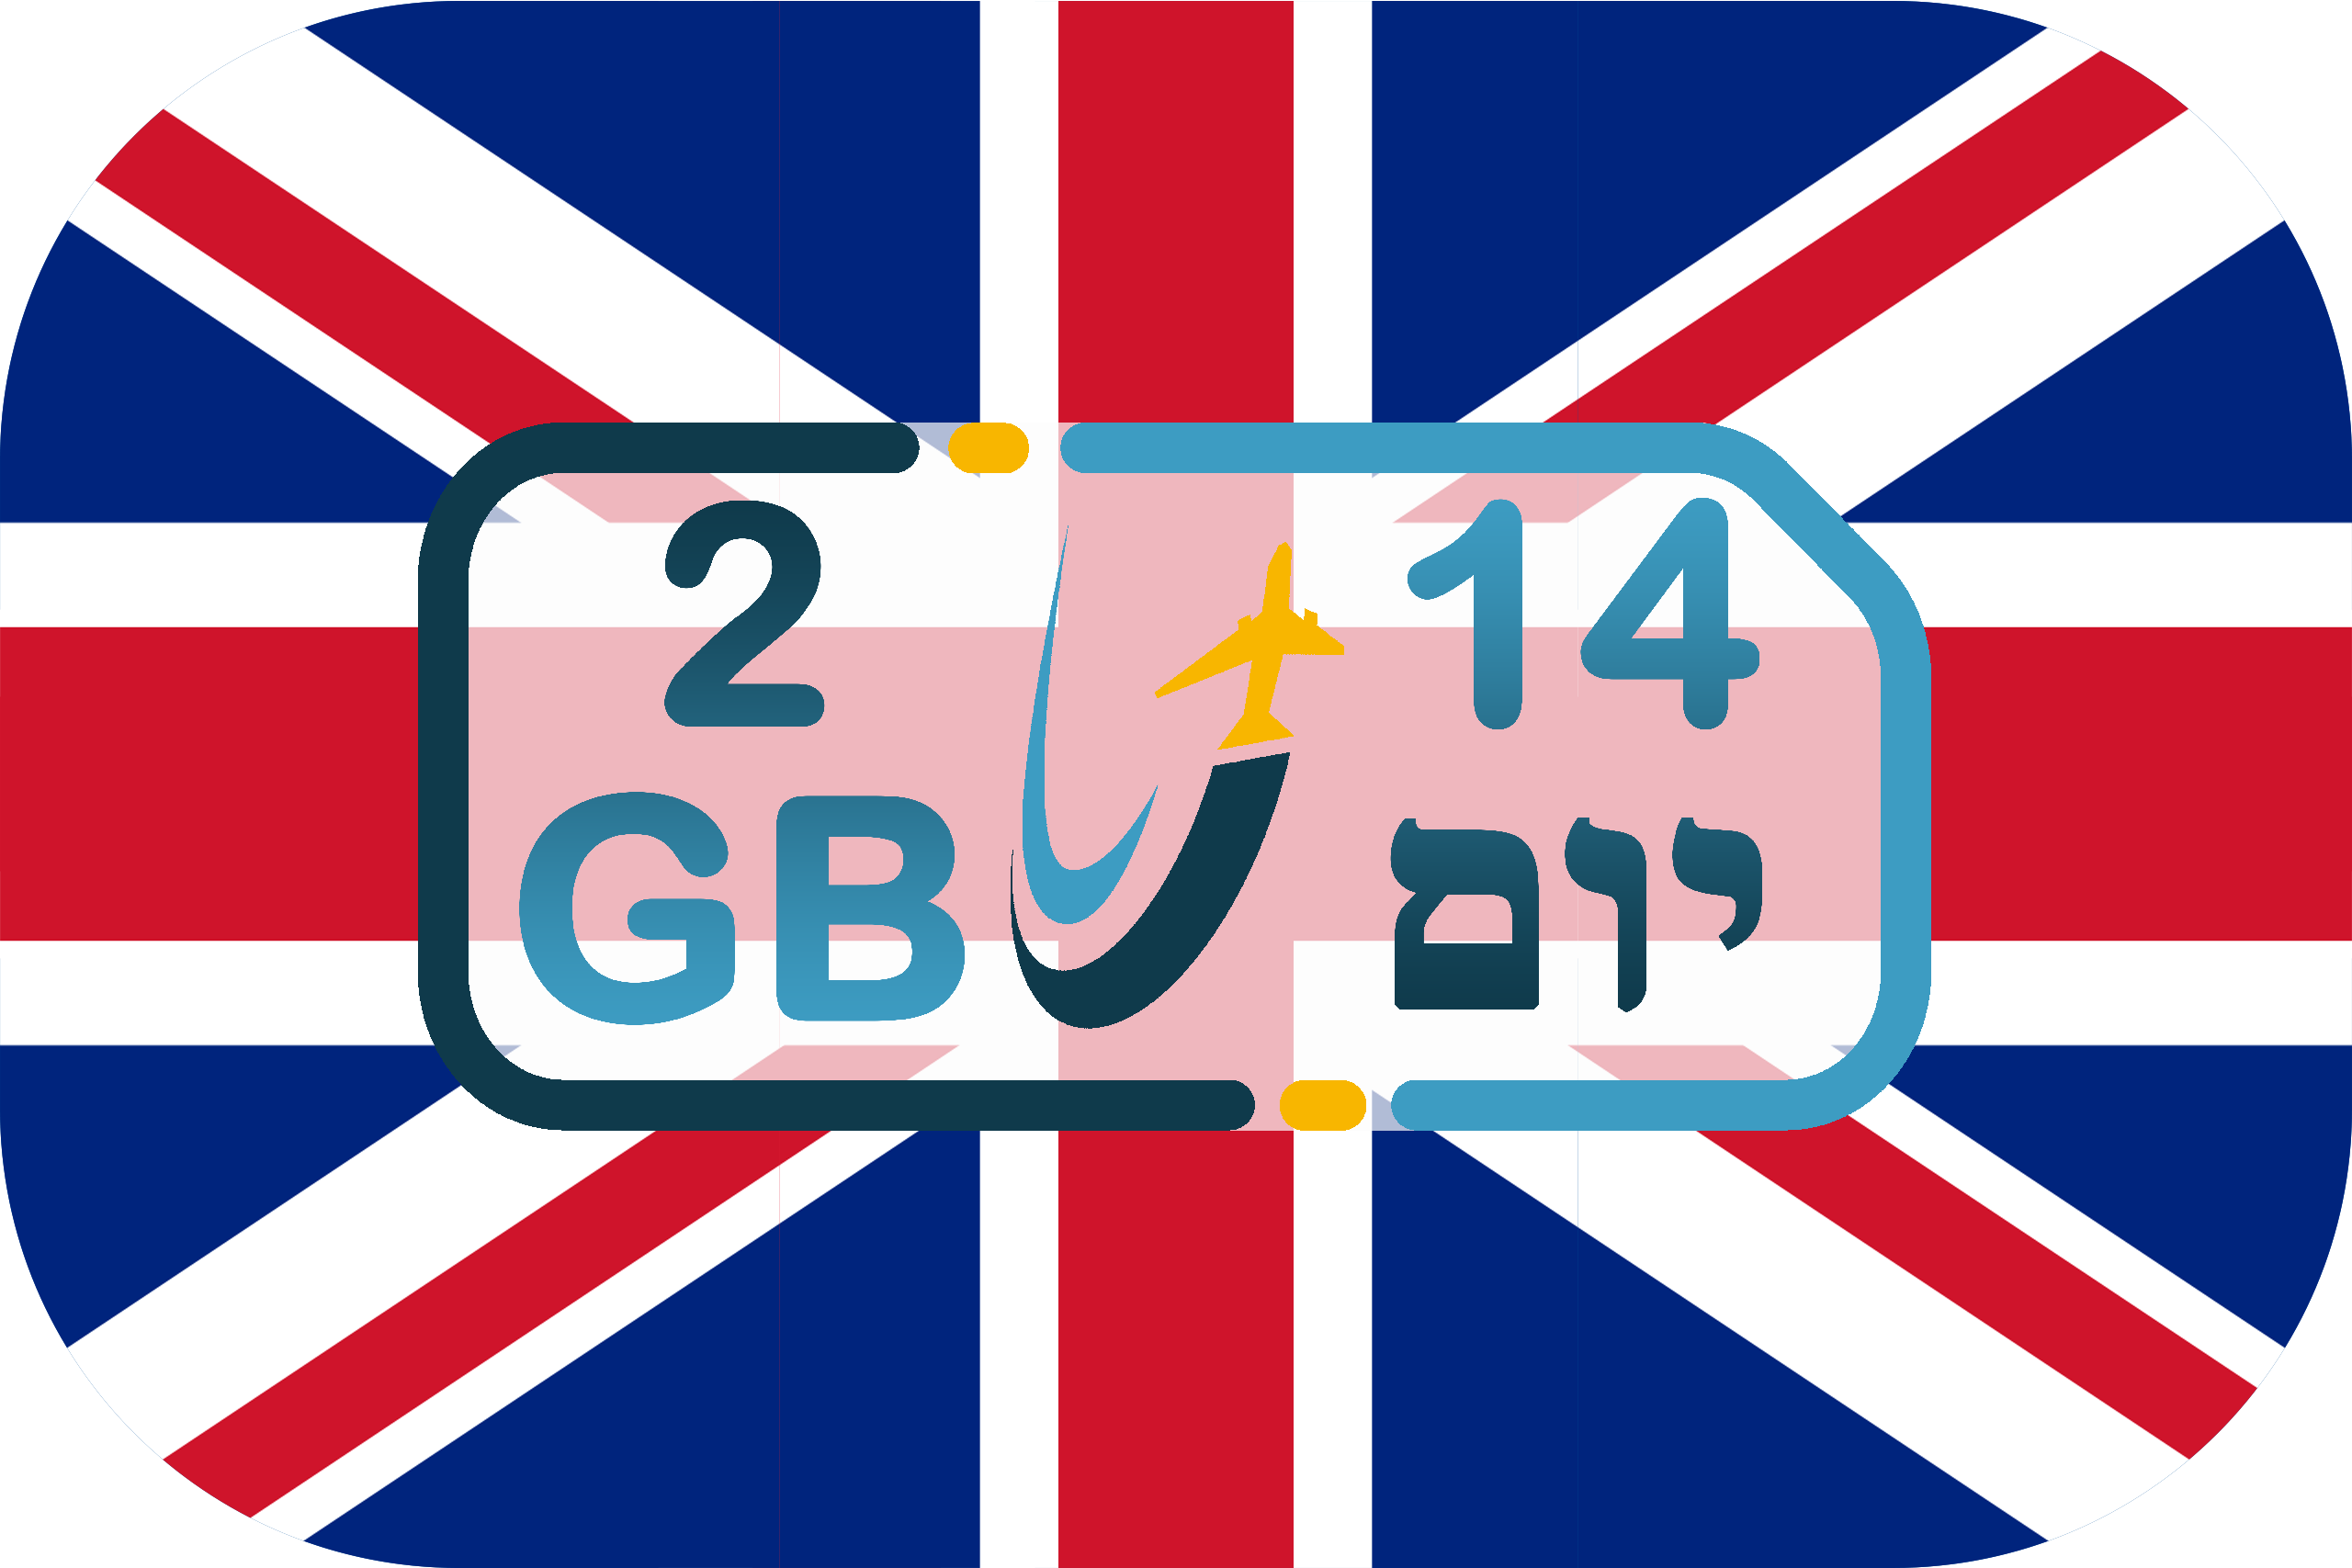 כרטיס סים באנגליה – גלישה 2GB (בתוקף ל- 14 יום)